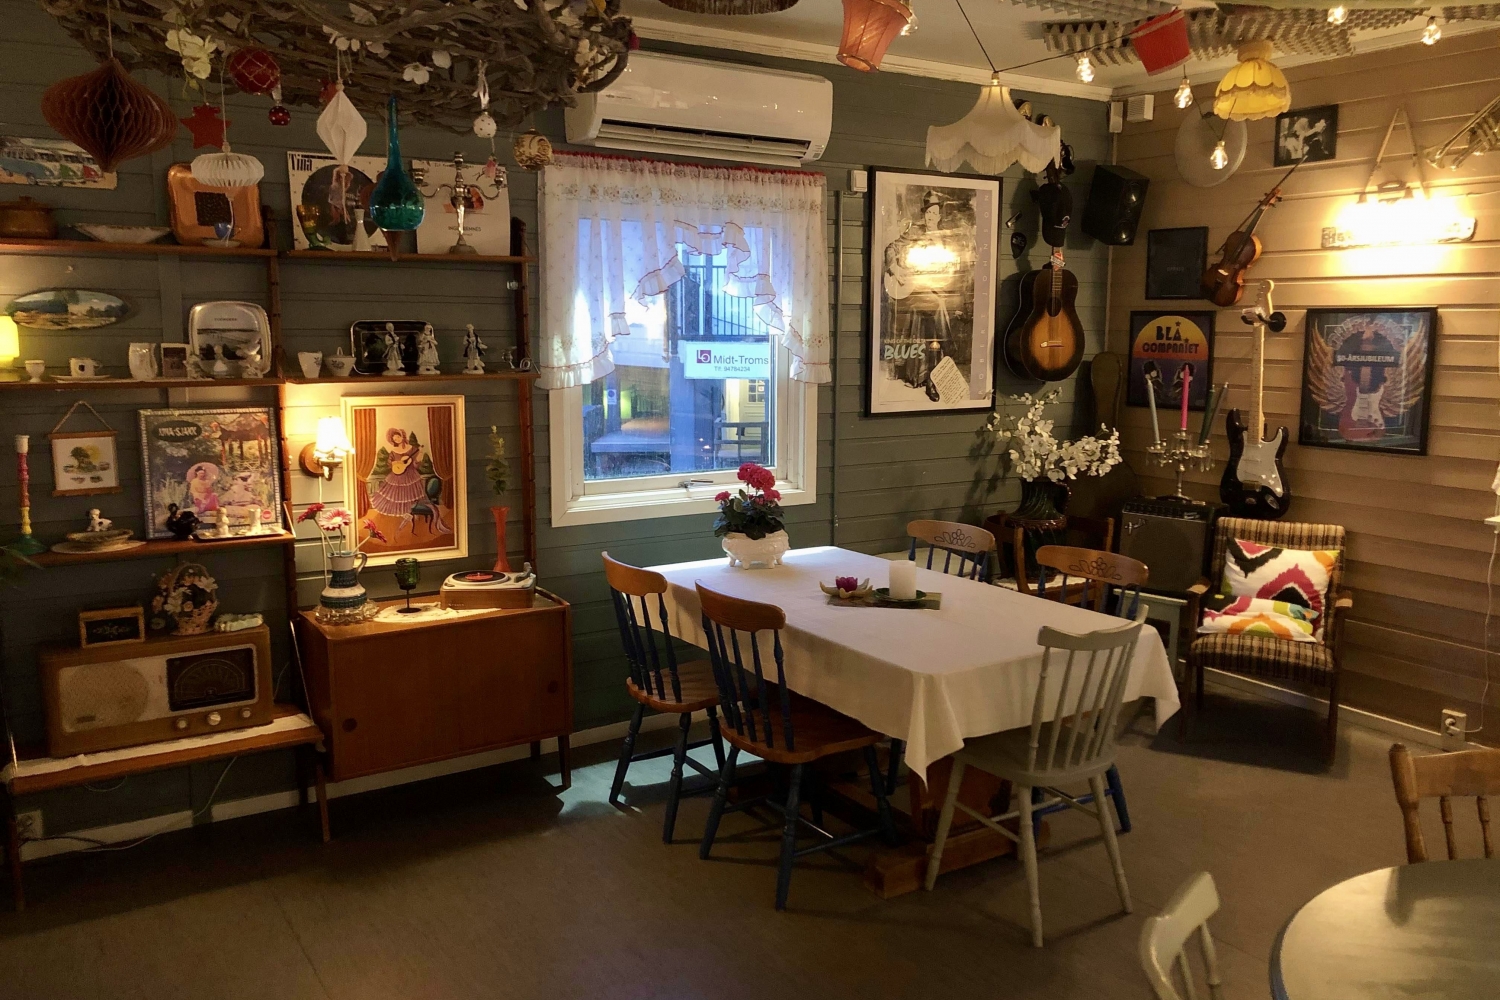 Inside of the retro cafe "Fruene på torget"